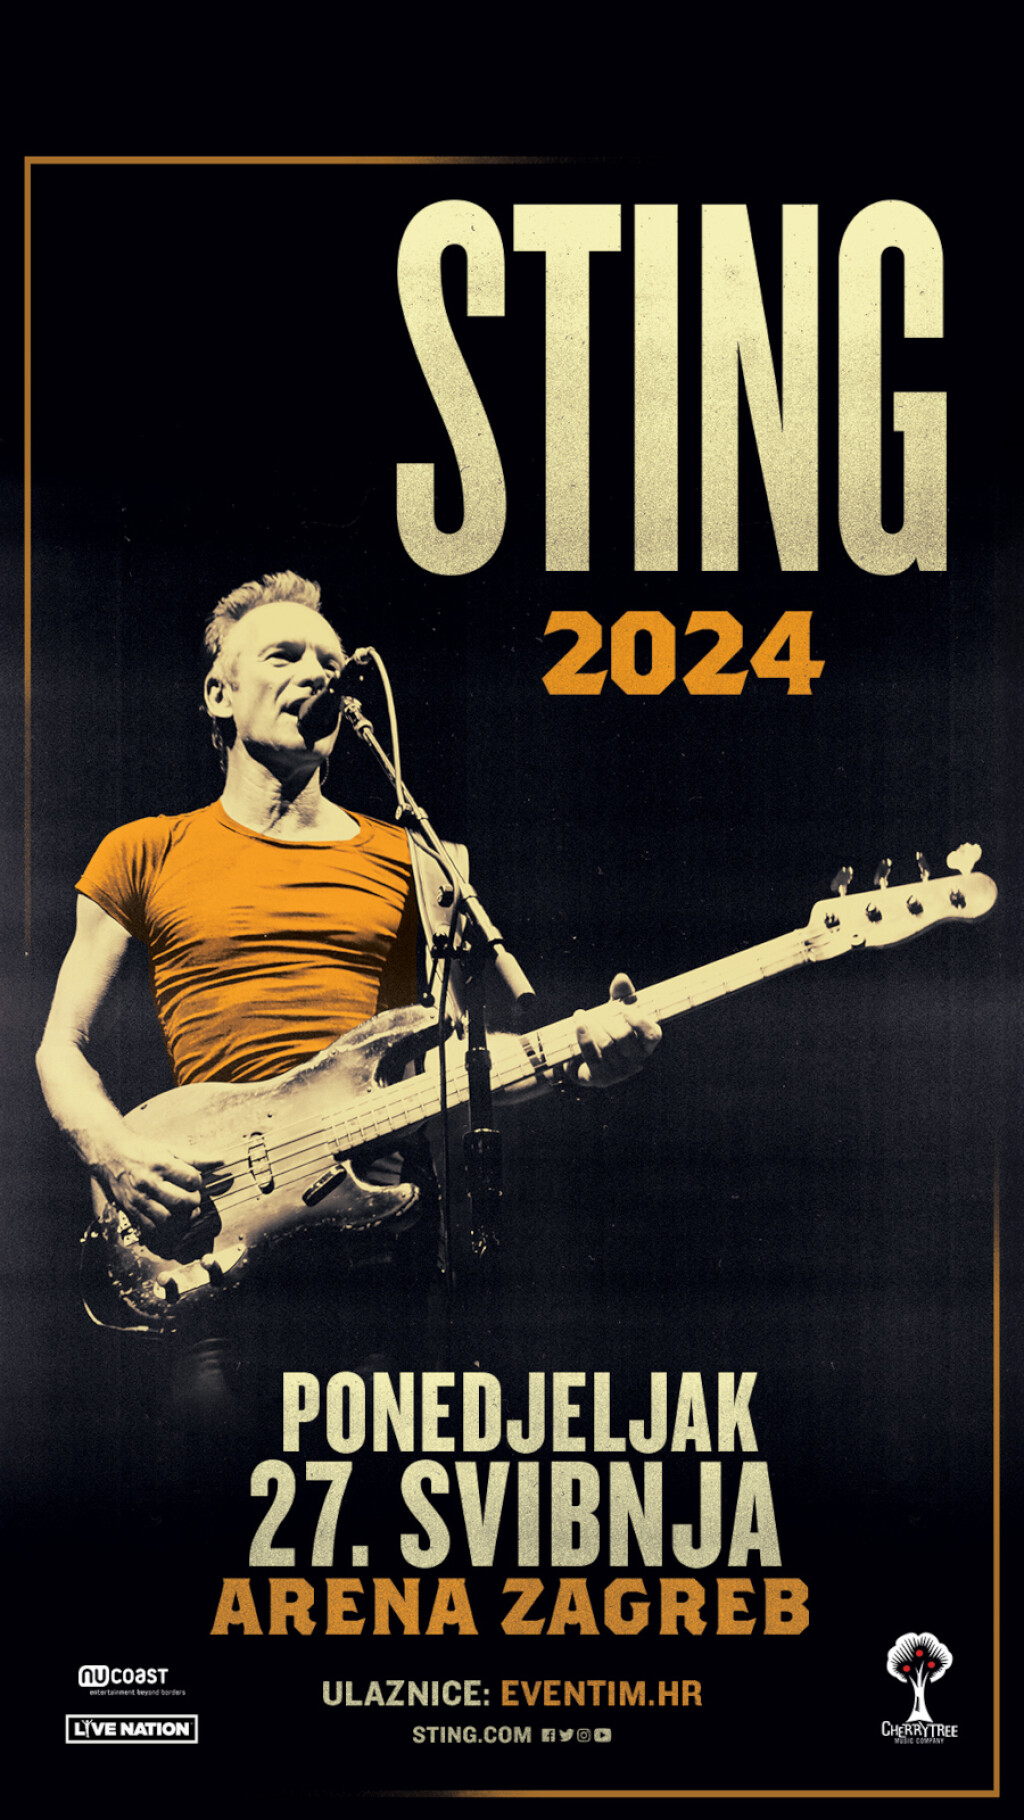 Sting iduće godine dolazi u Arenu Zagreb